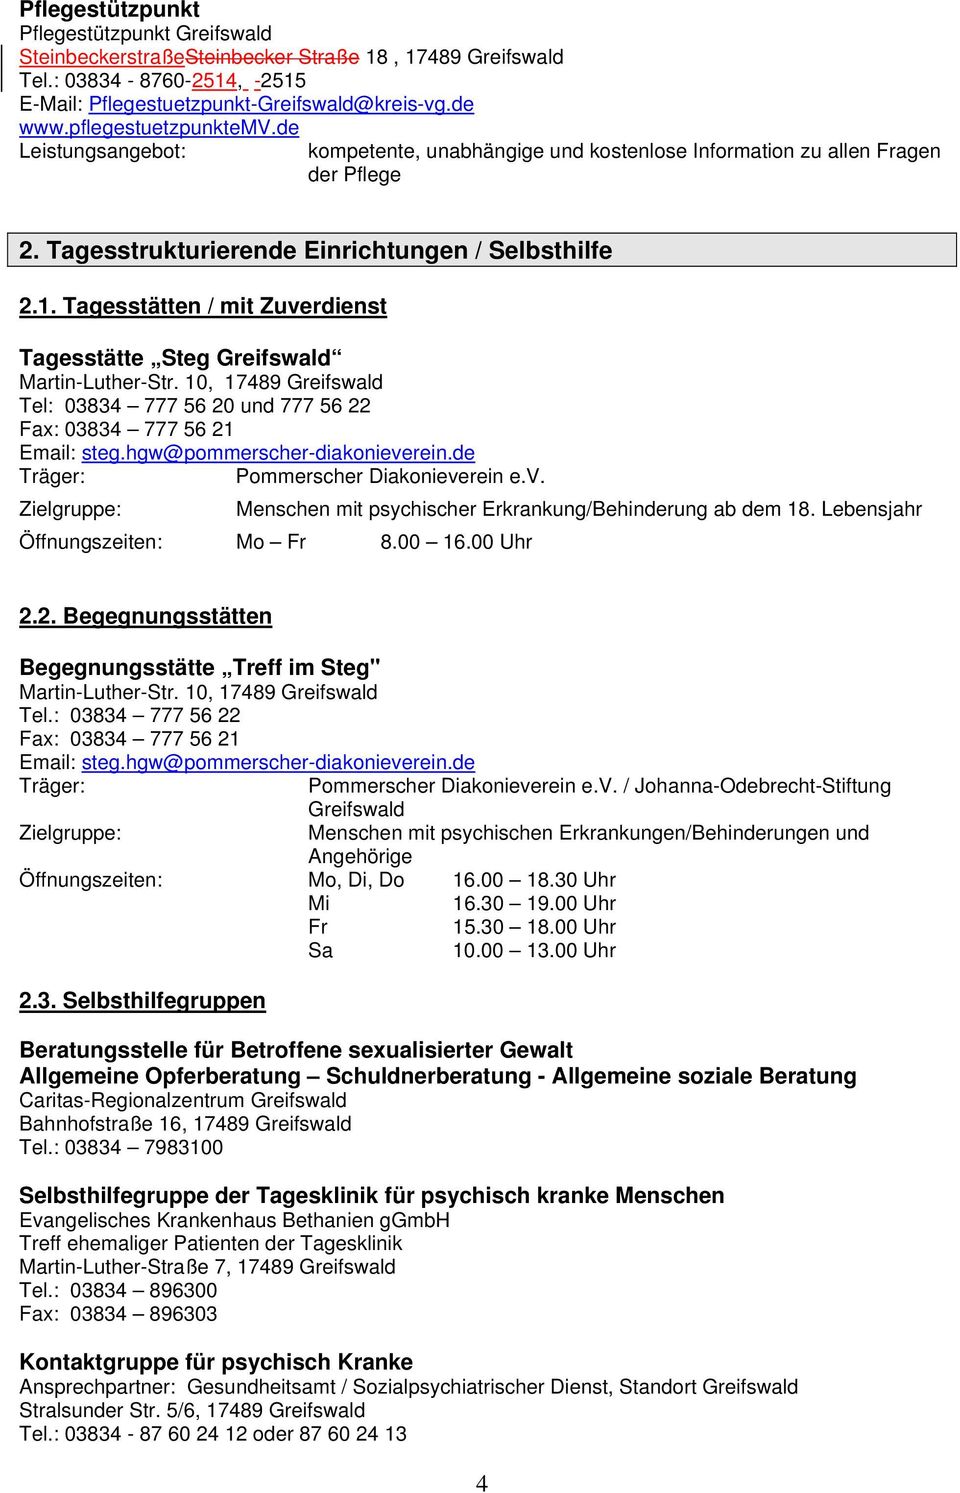 Tagesstätten / mit Zuverdienst Tagesstätte Steg Greifswald Martin-Luther-Str. 10, 17489 Greifswald Tel: 03834 777 56 20 und 777 56 22 Fax: 03834 777 56 21 Email: steg.hgw@pommerscher-diakonieverein.